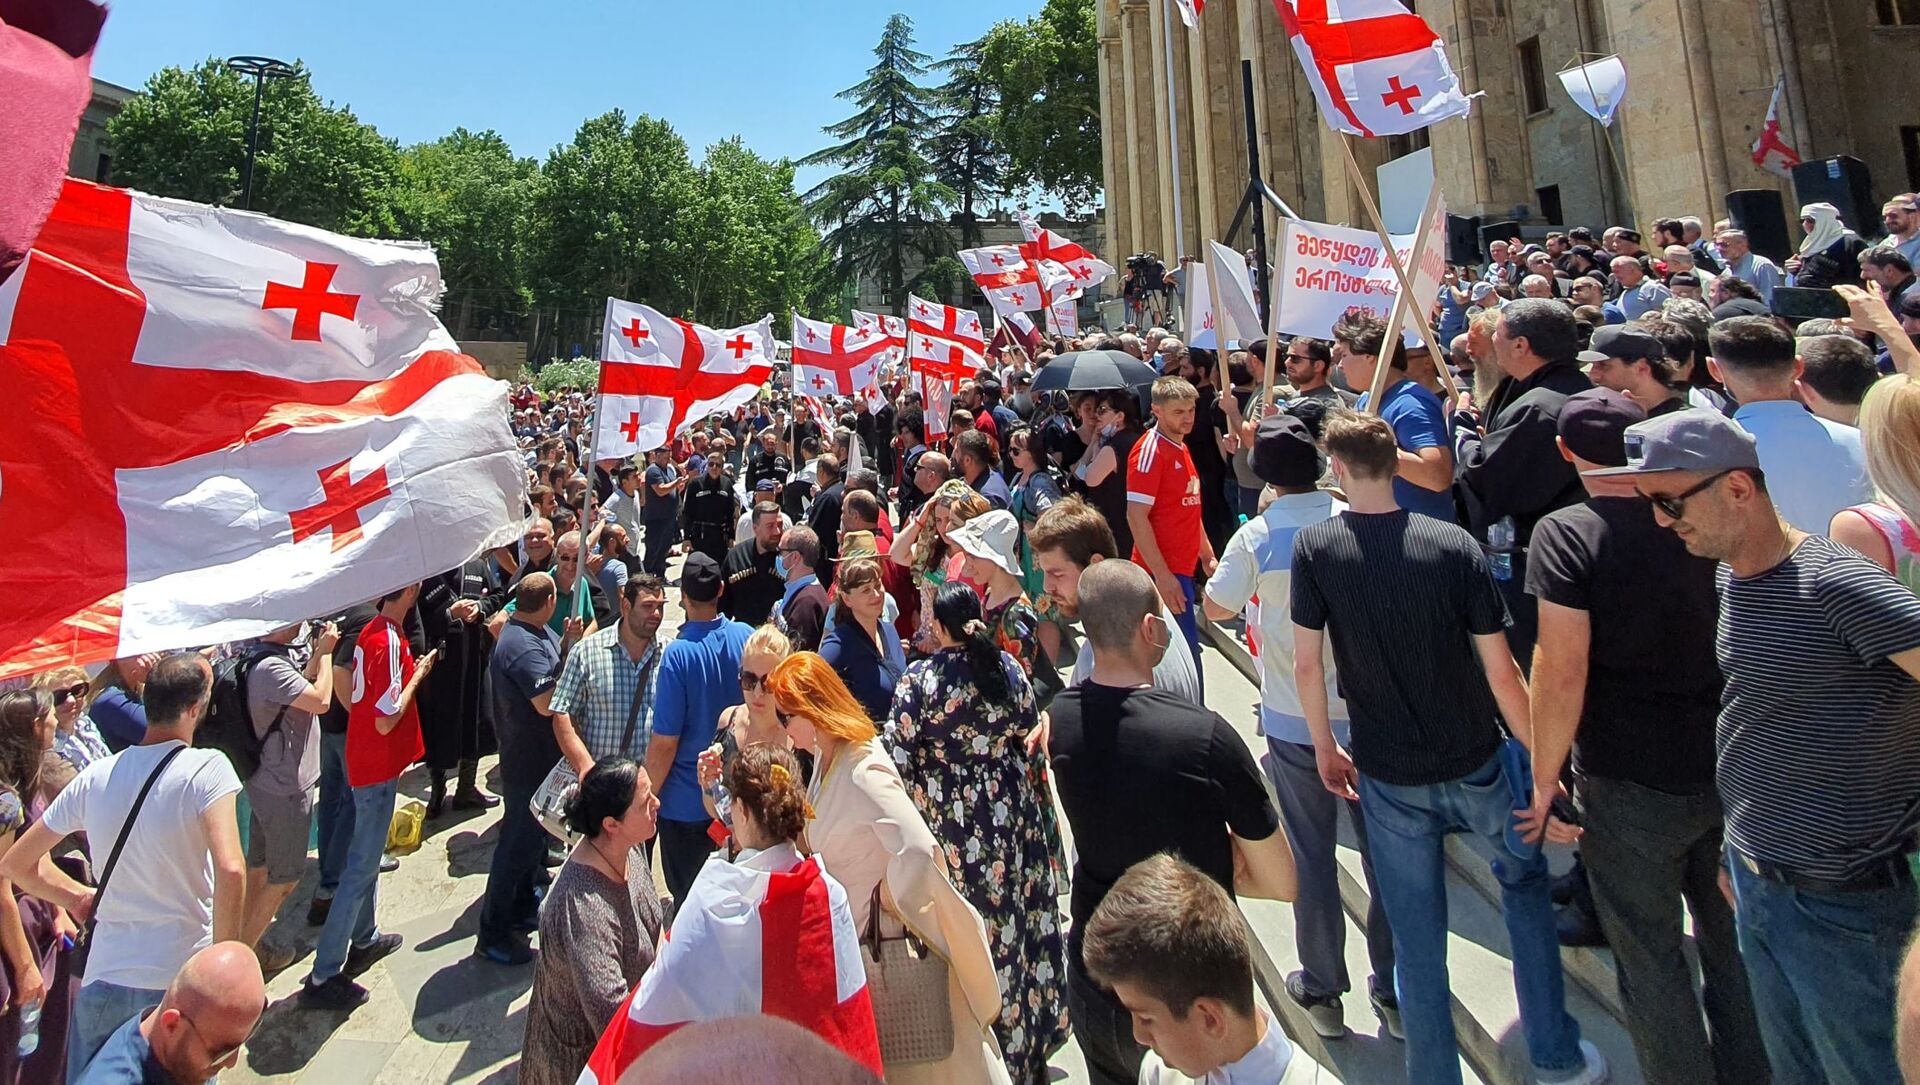 Противники ЛГБТ сообщества и Тбилиси прайда у здания парламента Грузии 5 июля 2021 года - Sputnik Грузия, 1920, 05.07.2021